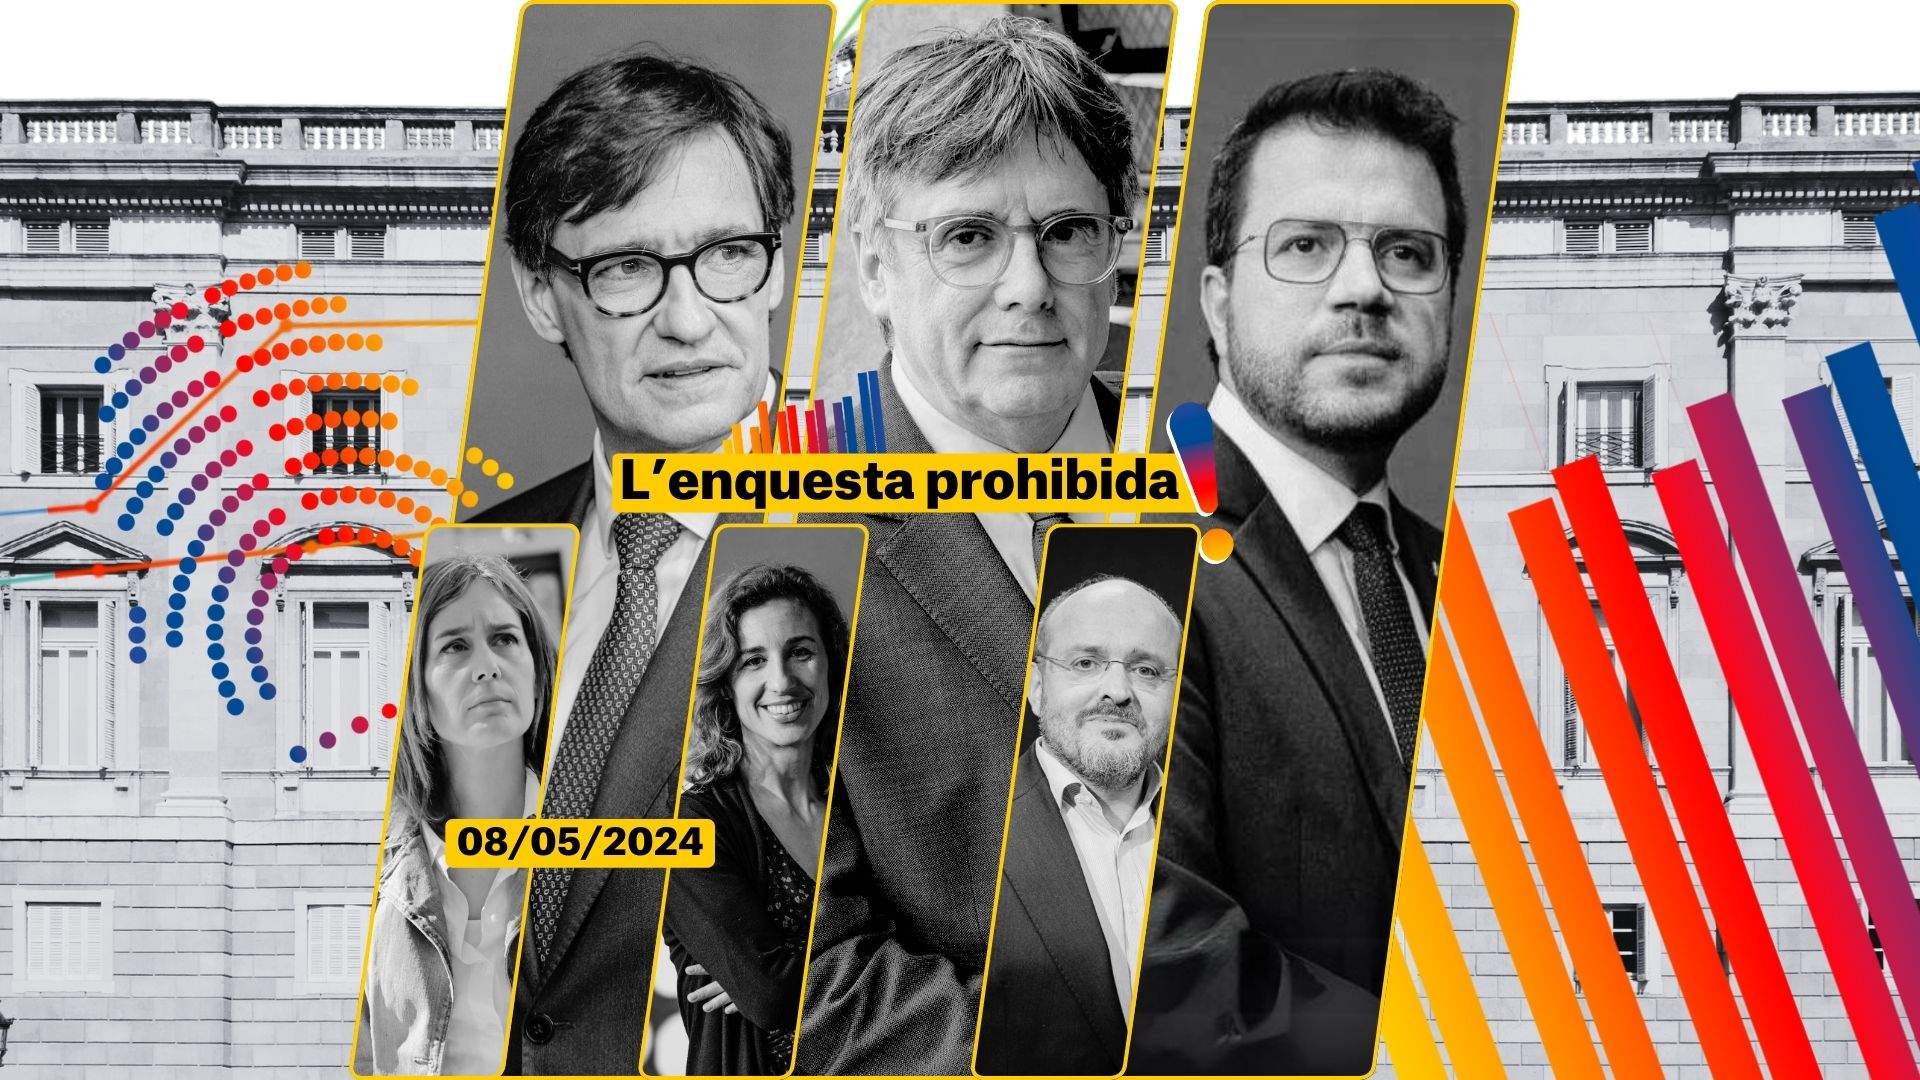 Enquesta eleccions Catalunya 2024   Enquesta prohibida 8 maig